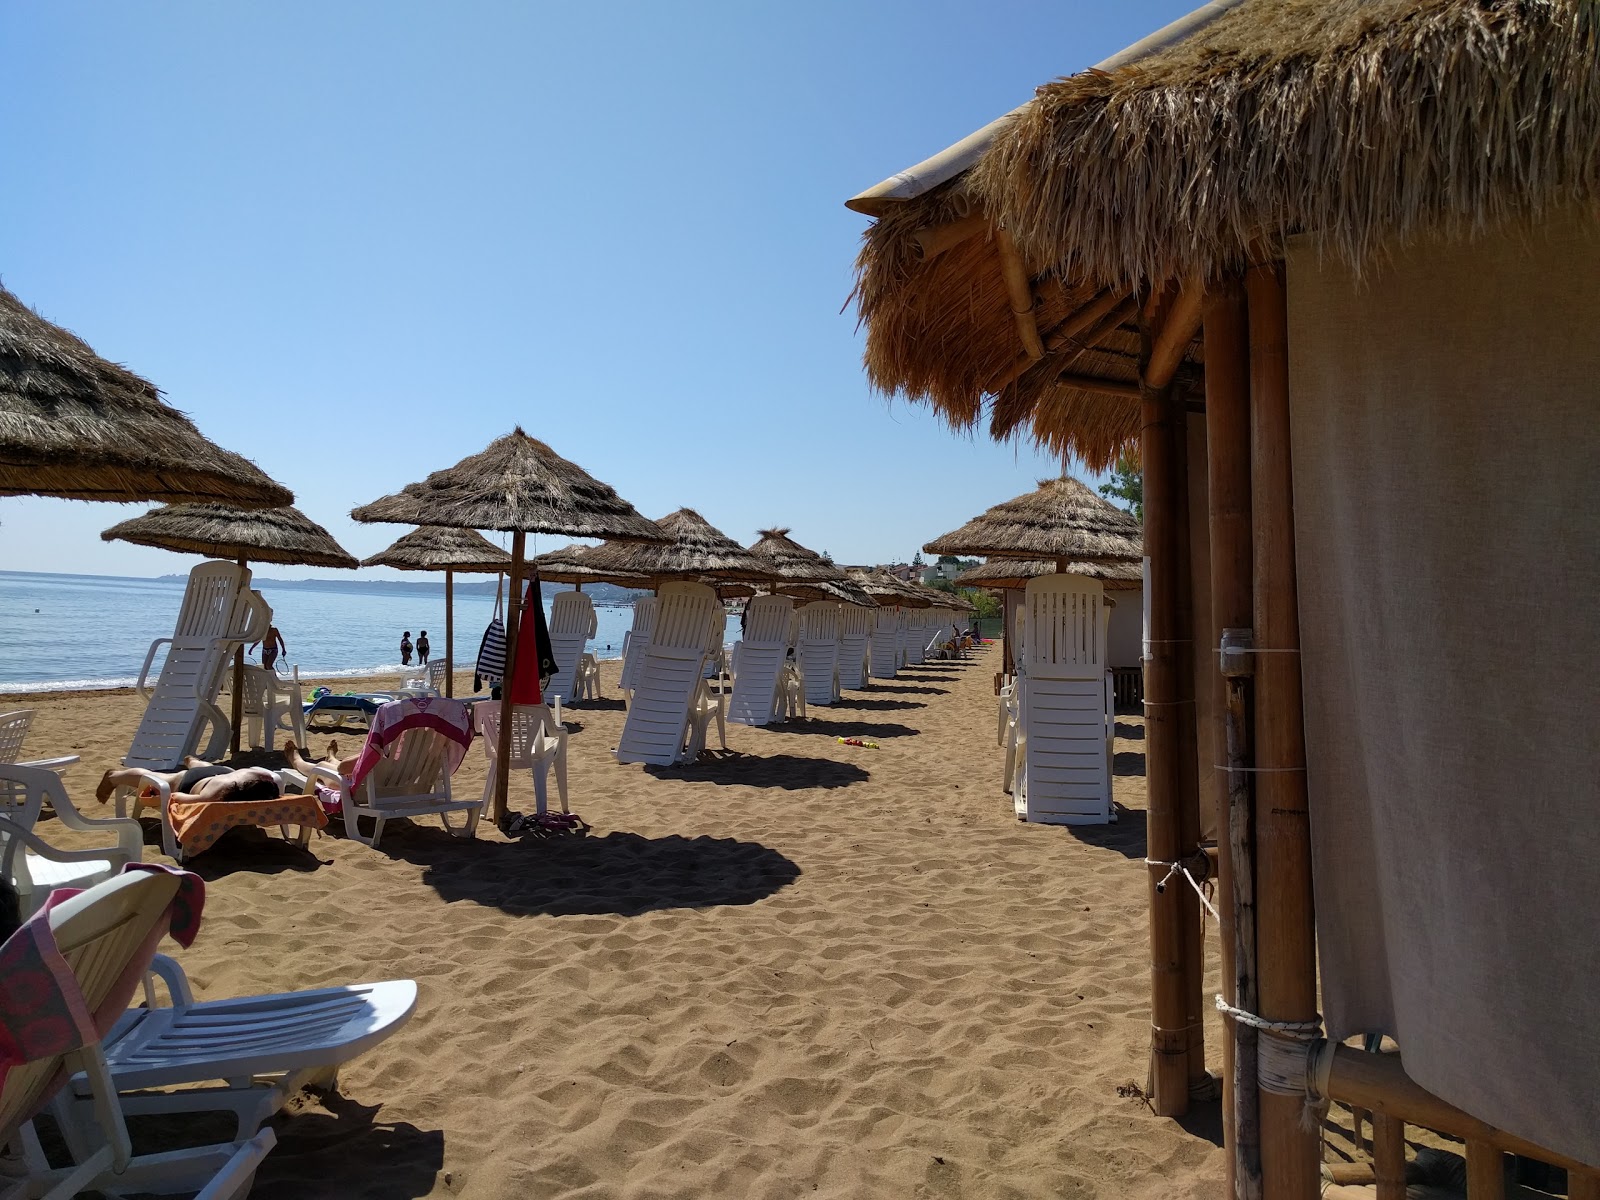 Foto de Spiaggia di Via Poseidonia - lugar popular entre los conocedores del relax